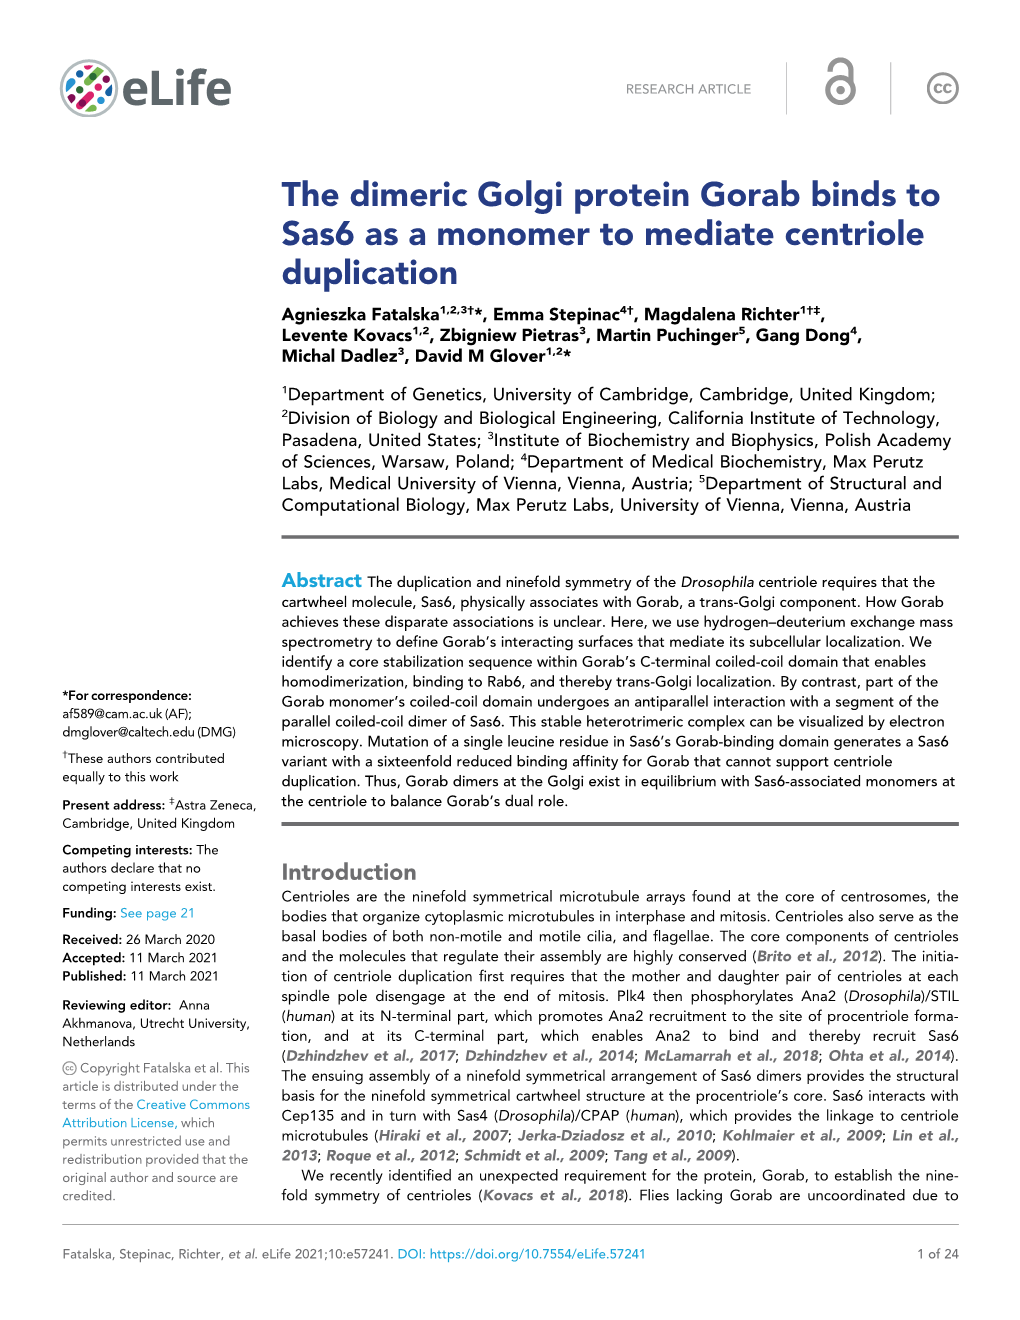 The Dimeric Golgi Protein Gorab Binds to Sas6 As a Monomer to Mediate